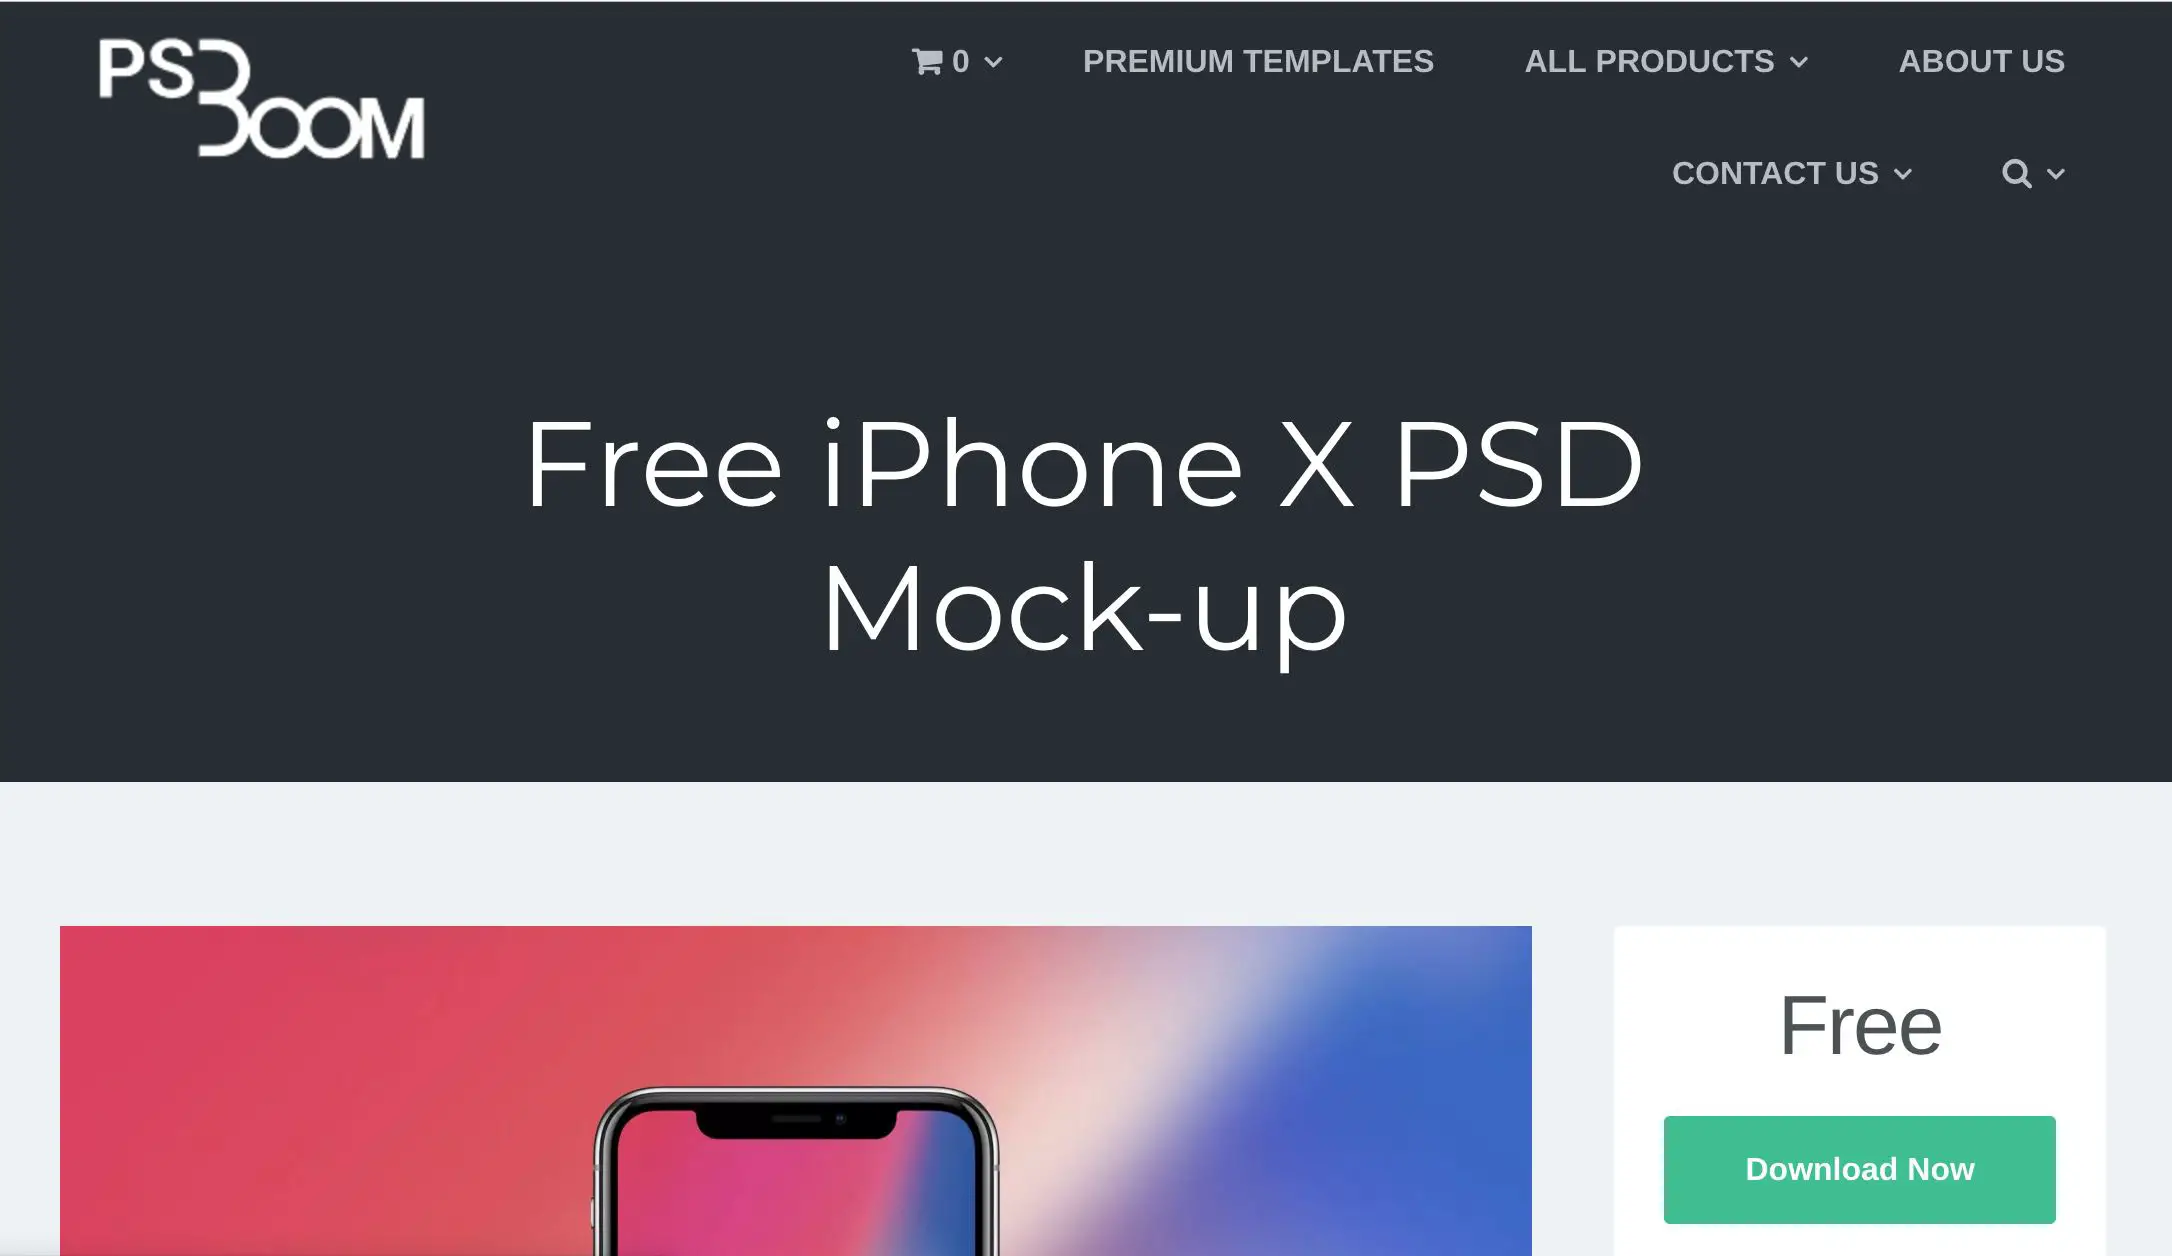 Site do PS Boom mostrando o iPhone X PSD Mock-up grátis